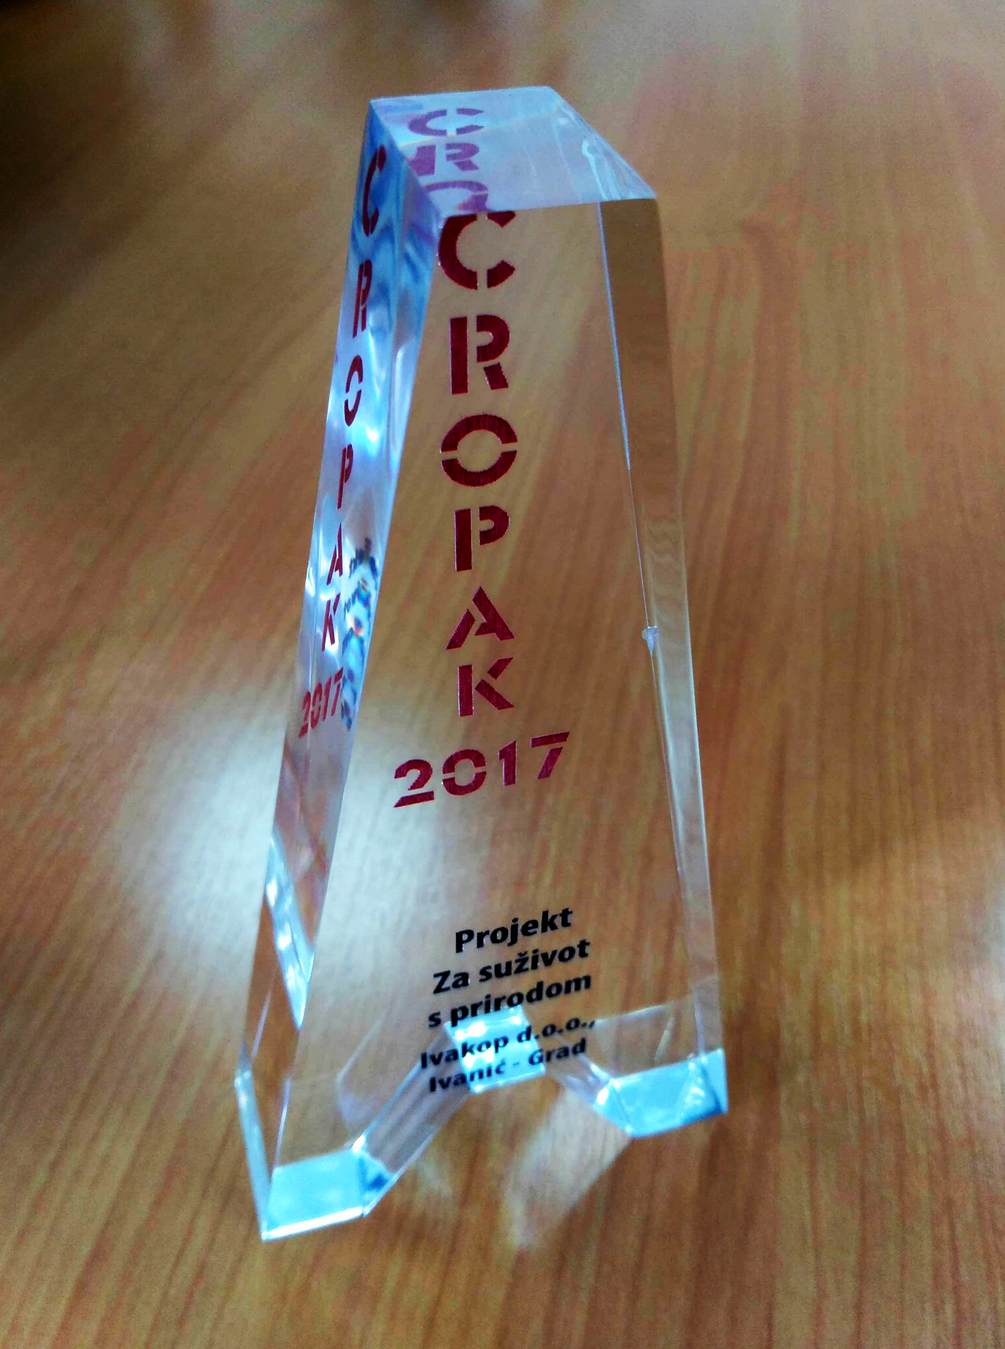 Ivakop osvojio prestižnu nagradu Cropak 2017